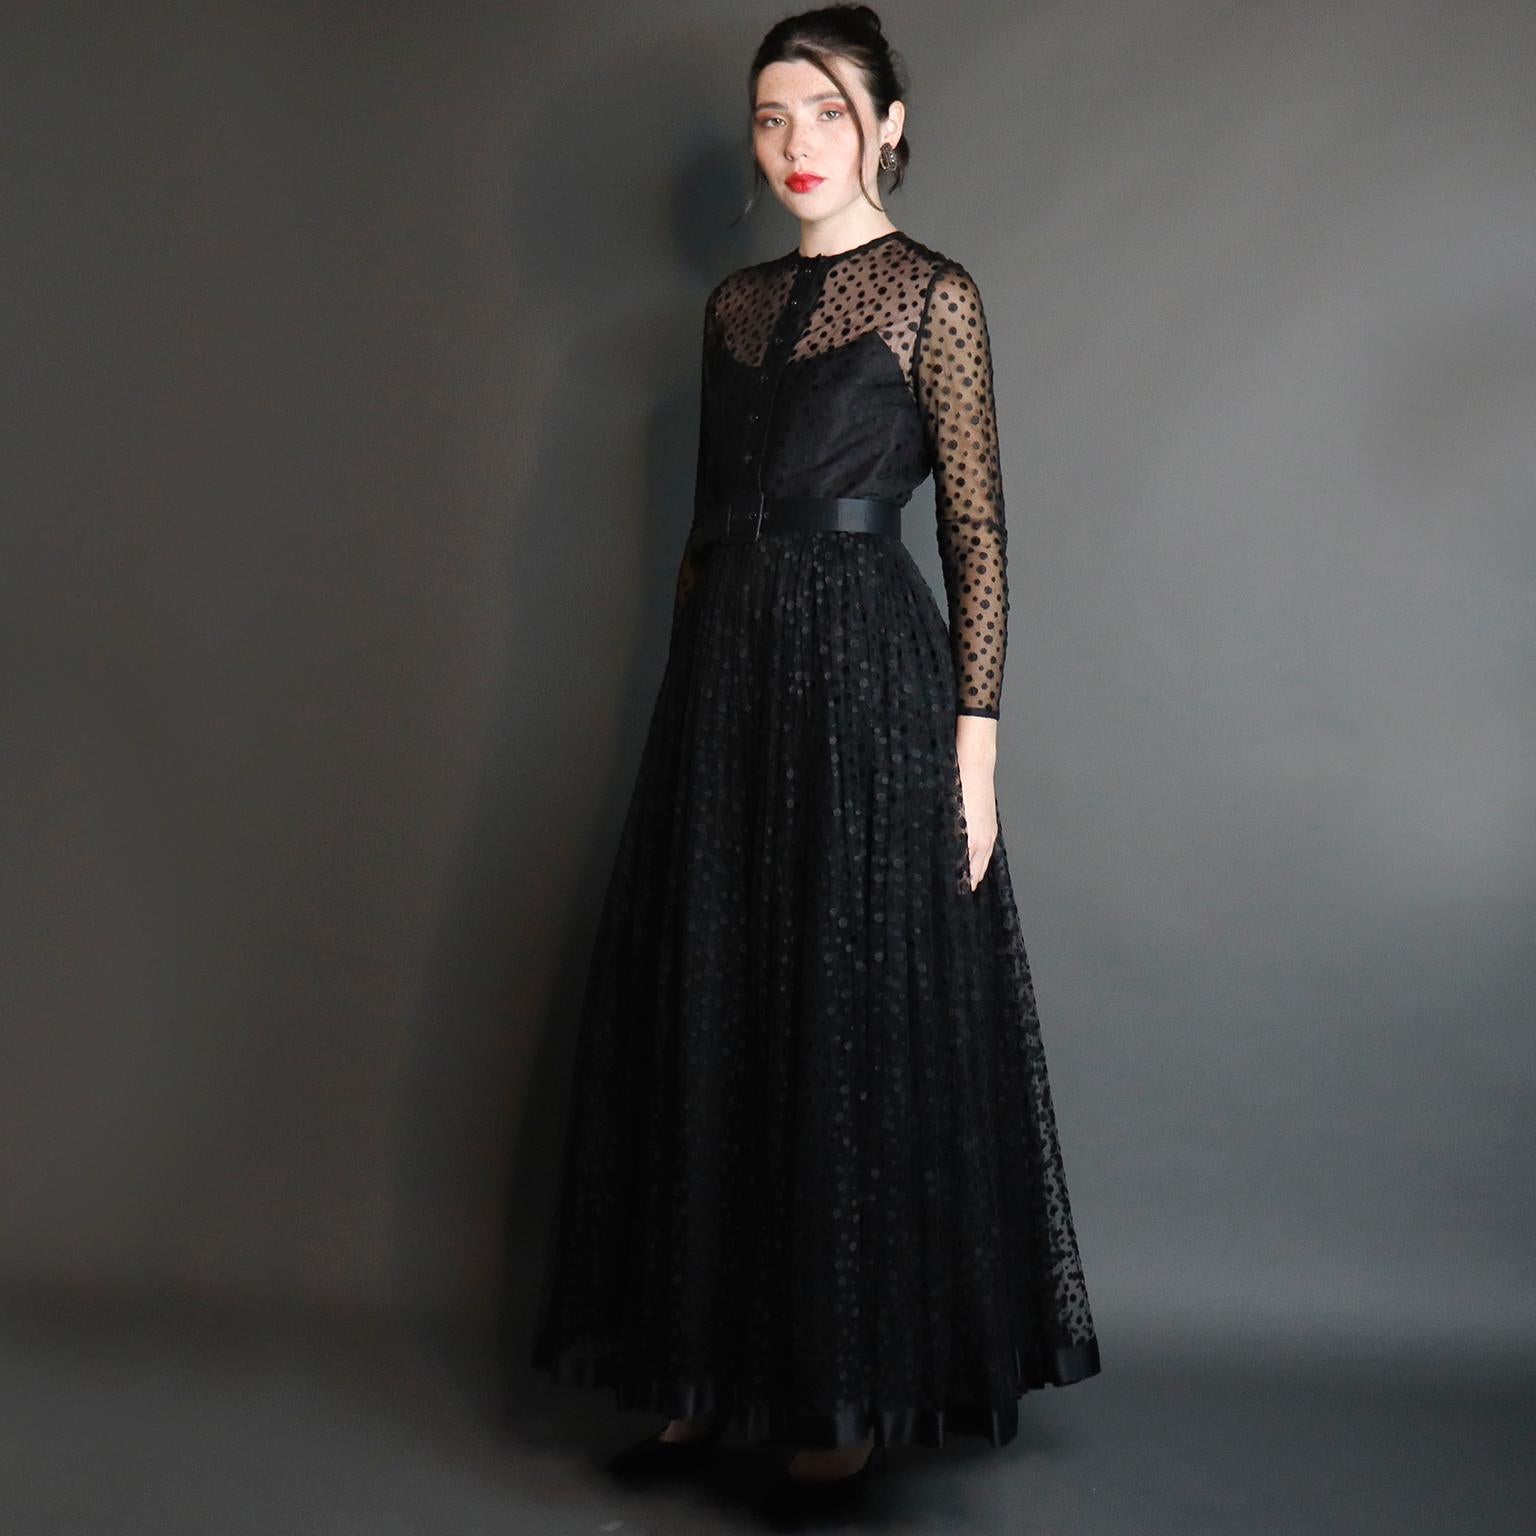 Dies ist ein wirklich sensationelles schwarzes Abendkleid im Vintage-Stil, entworfen von Bill Blass in den 1970er Jahren. Dieses wunderschöne Kleid hat üppige Schichten aus schwarzem Punktnetz über schwarzem Seidentaft. Das Kleid ist in der Taille